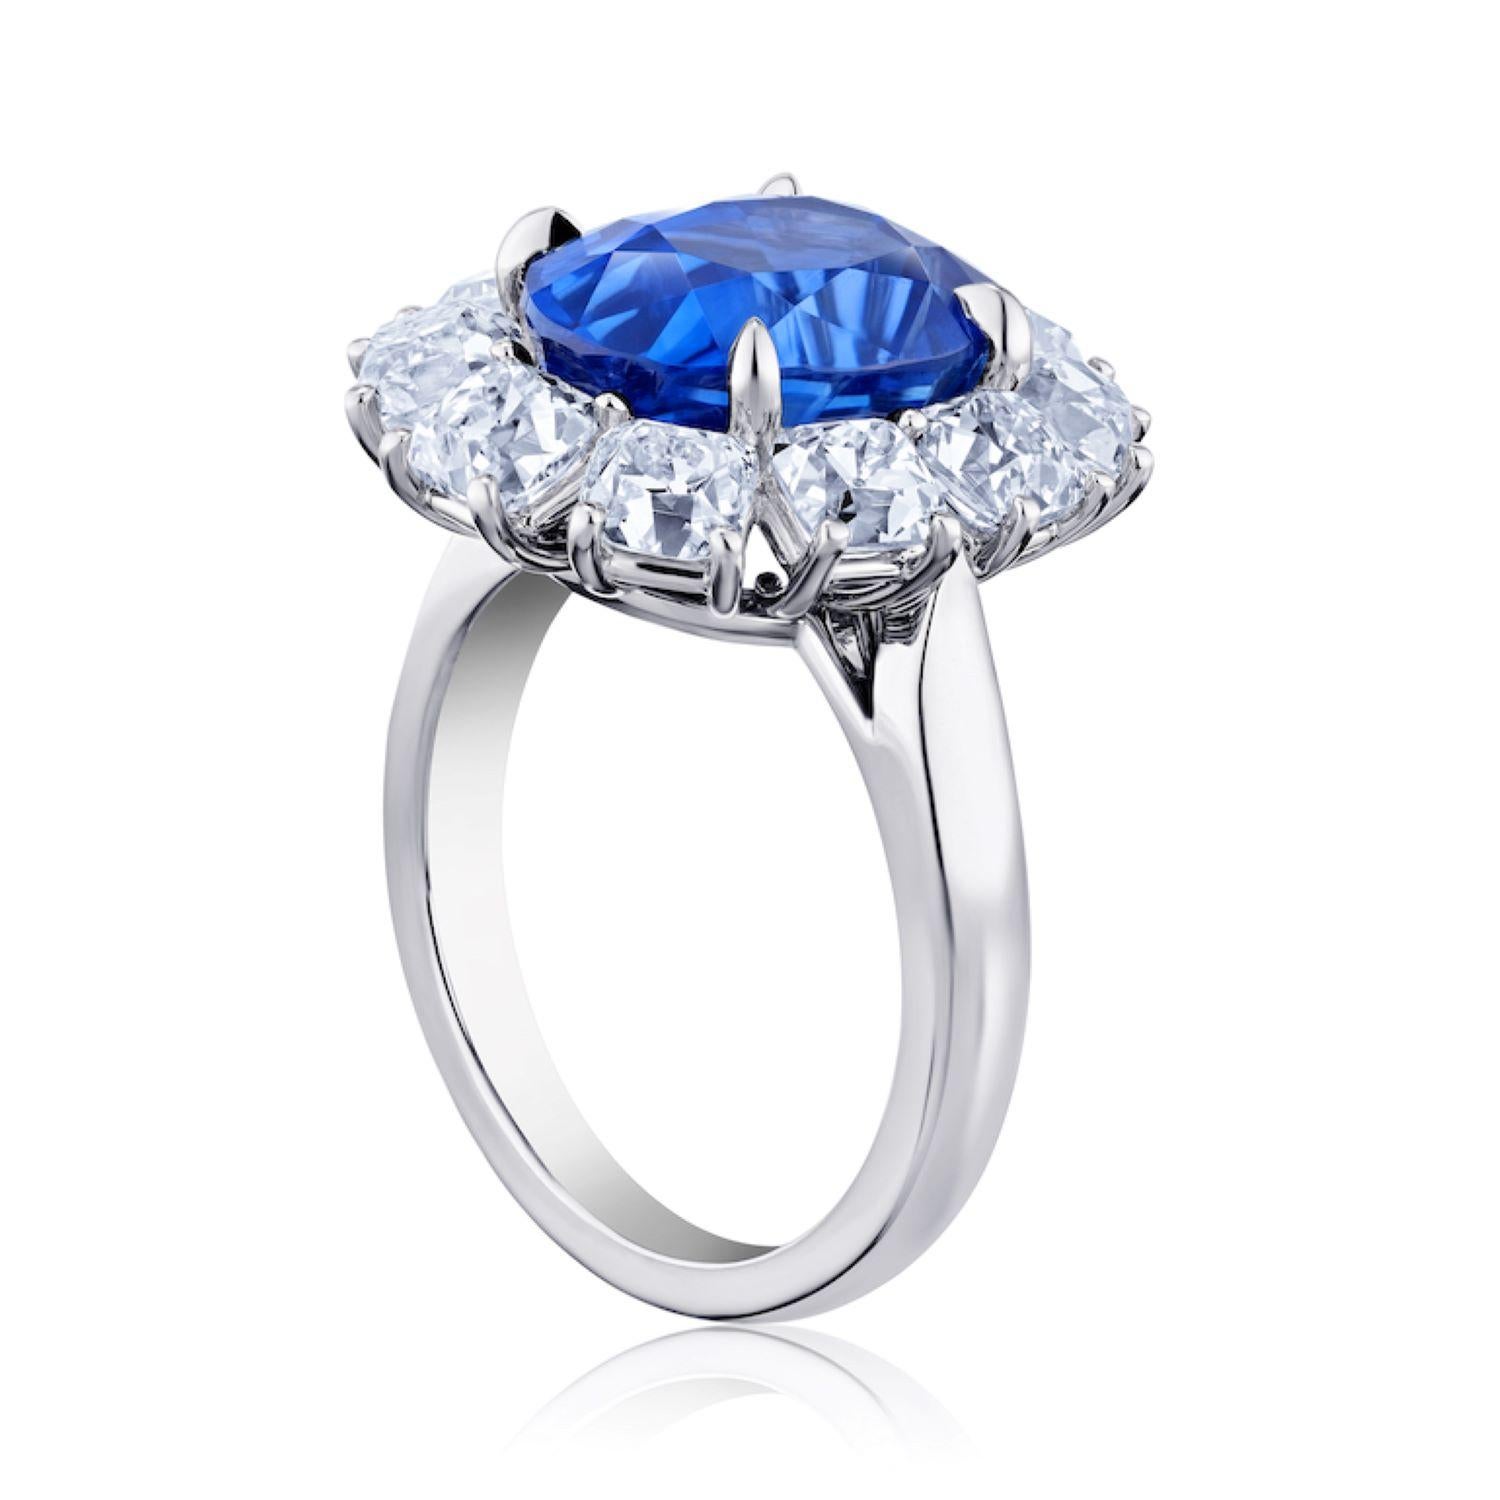 Ovaler blauer Saphir von 7,43 Karat mit zehn Old-Miner-Diamanten von 4,10 Karat, gefasst in einem Platinring